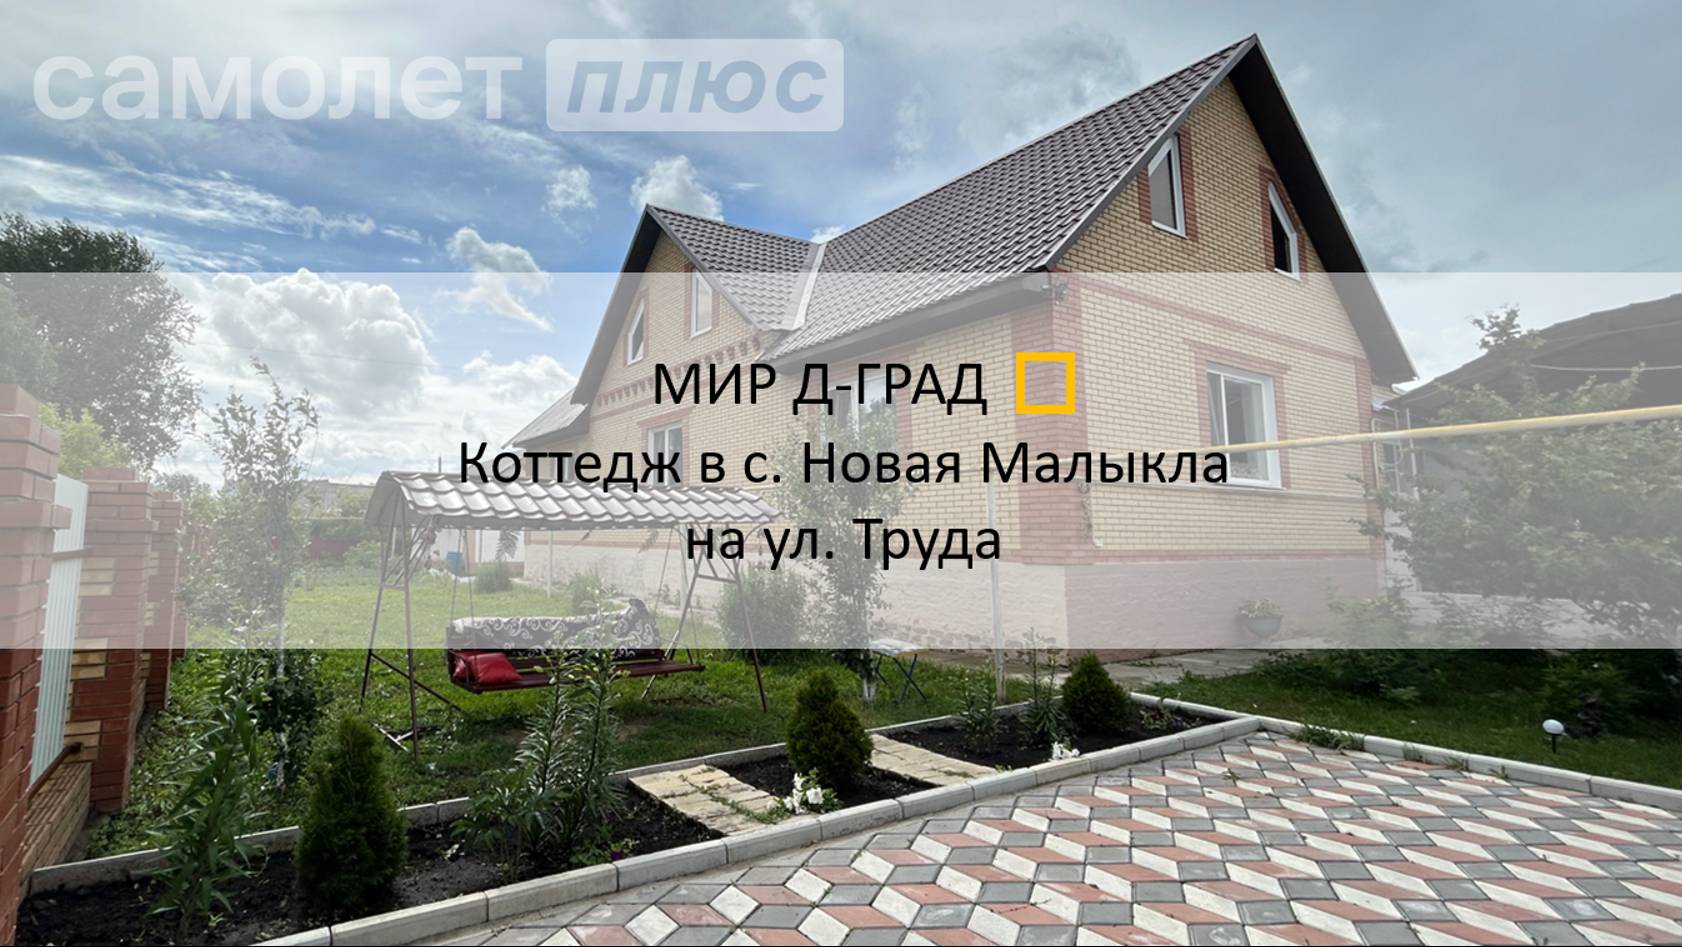 Коттедж в с. Новая Малыкла на ул. Труда, 264,5 м², на участке 19 соток, Ульяновская область